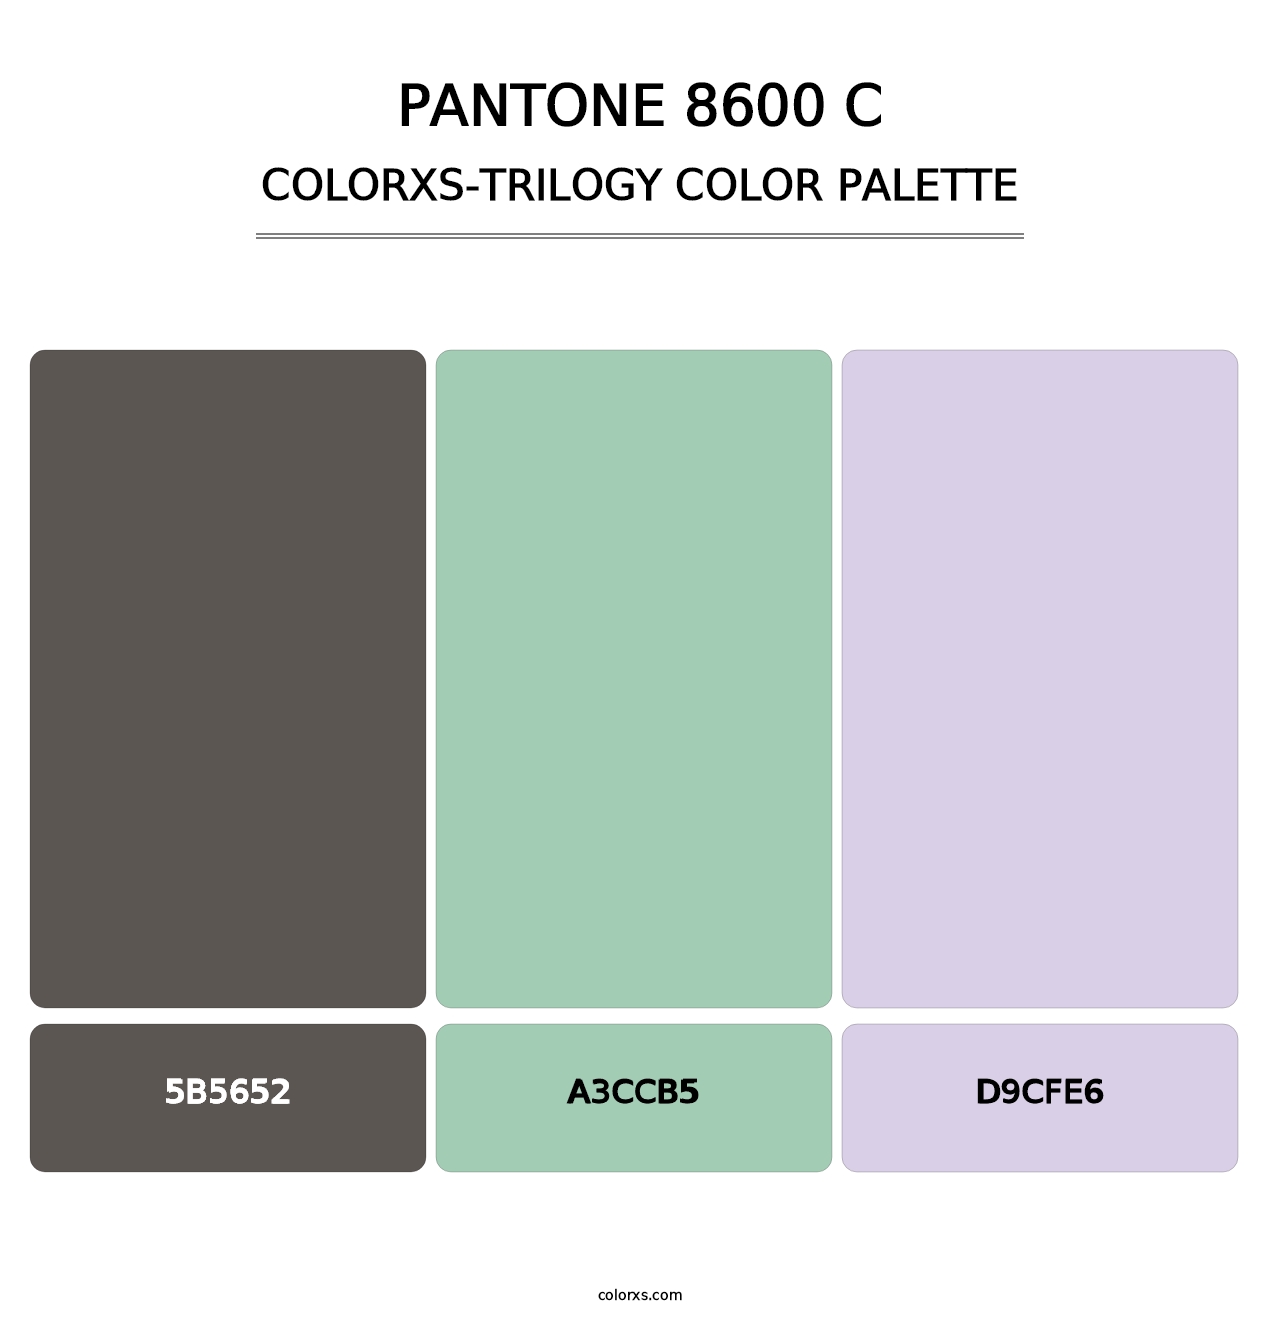 PANTONE 8600 C - Colorxs Trilogy Palette